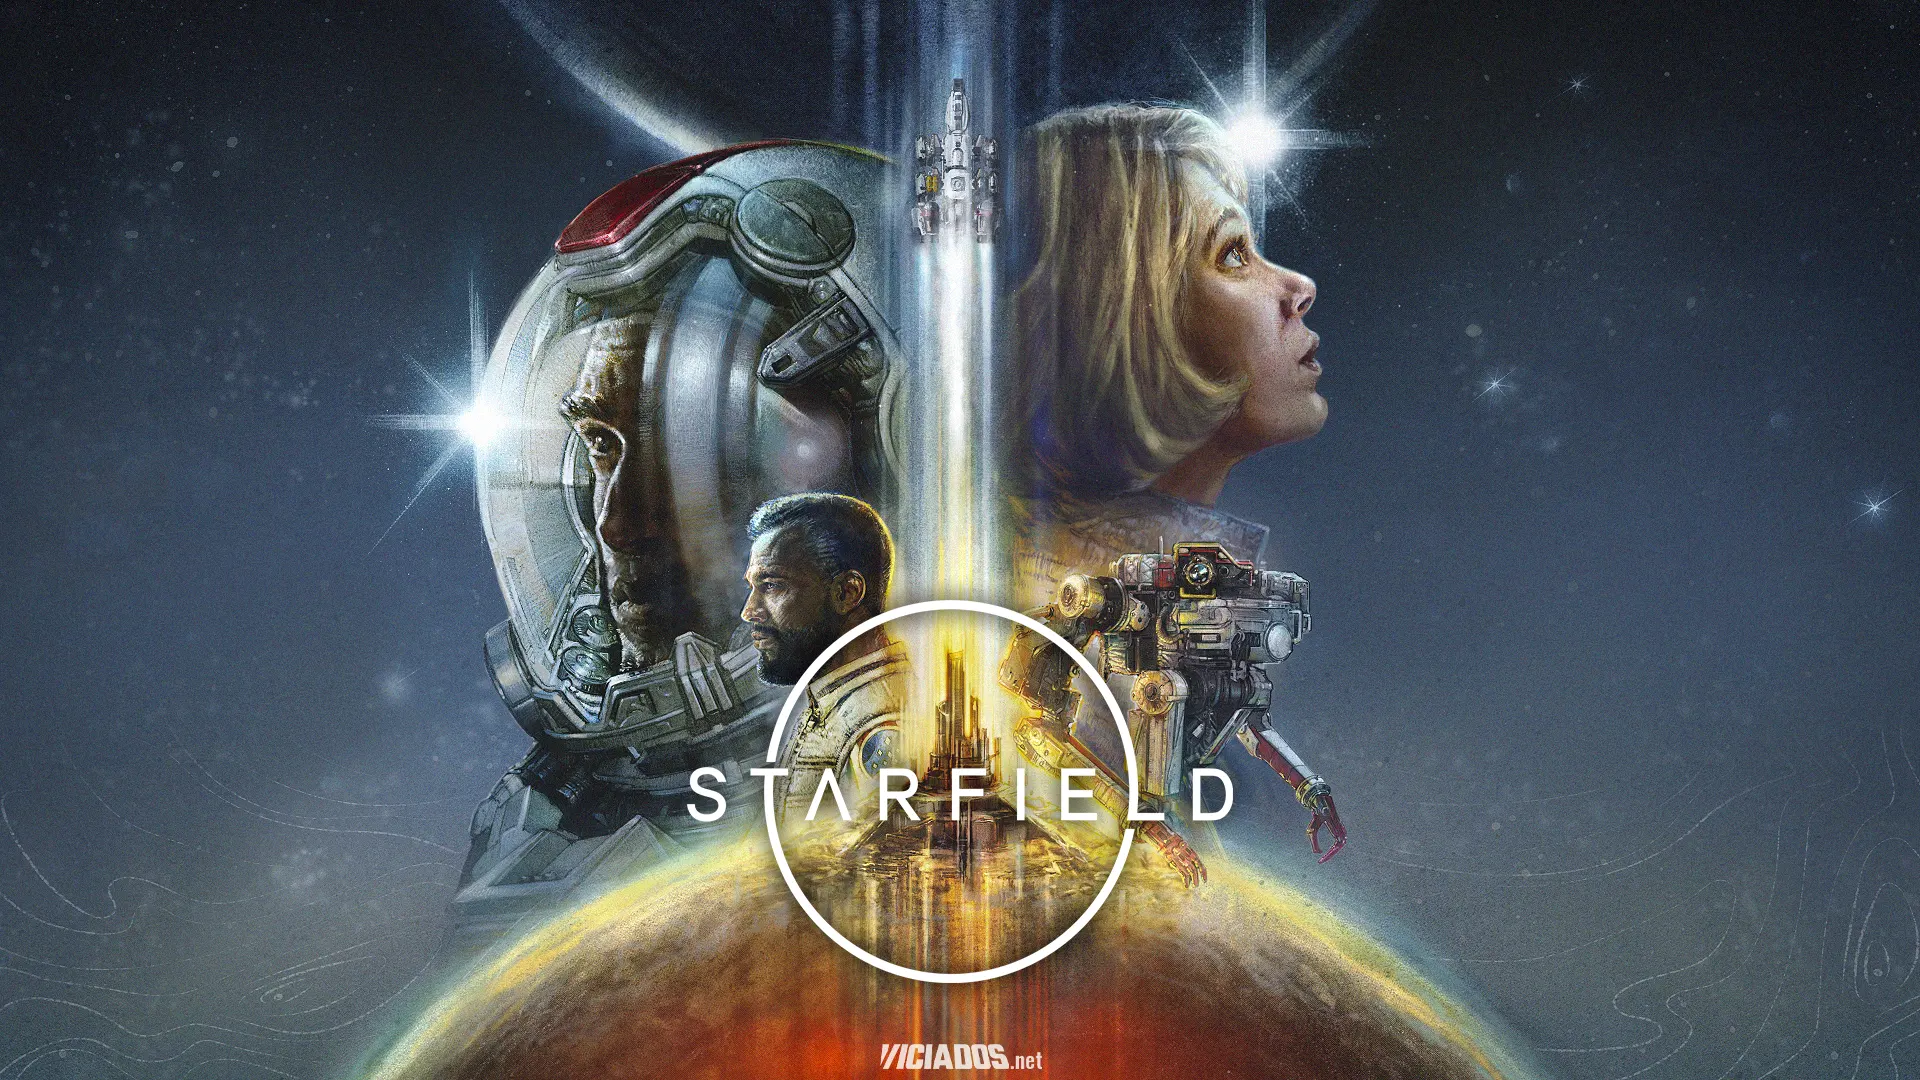 Starfield | Bethesda confirma lançamento oficial para esta data 2023 Viciados